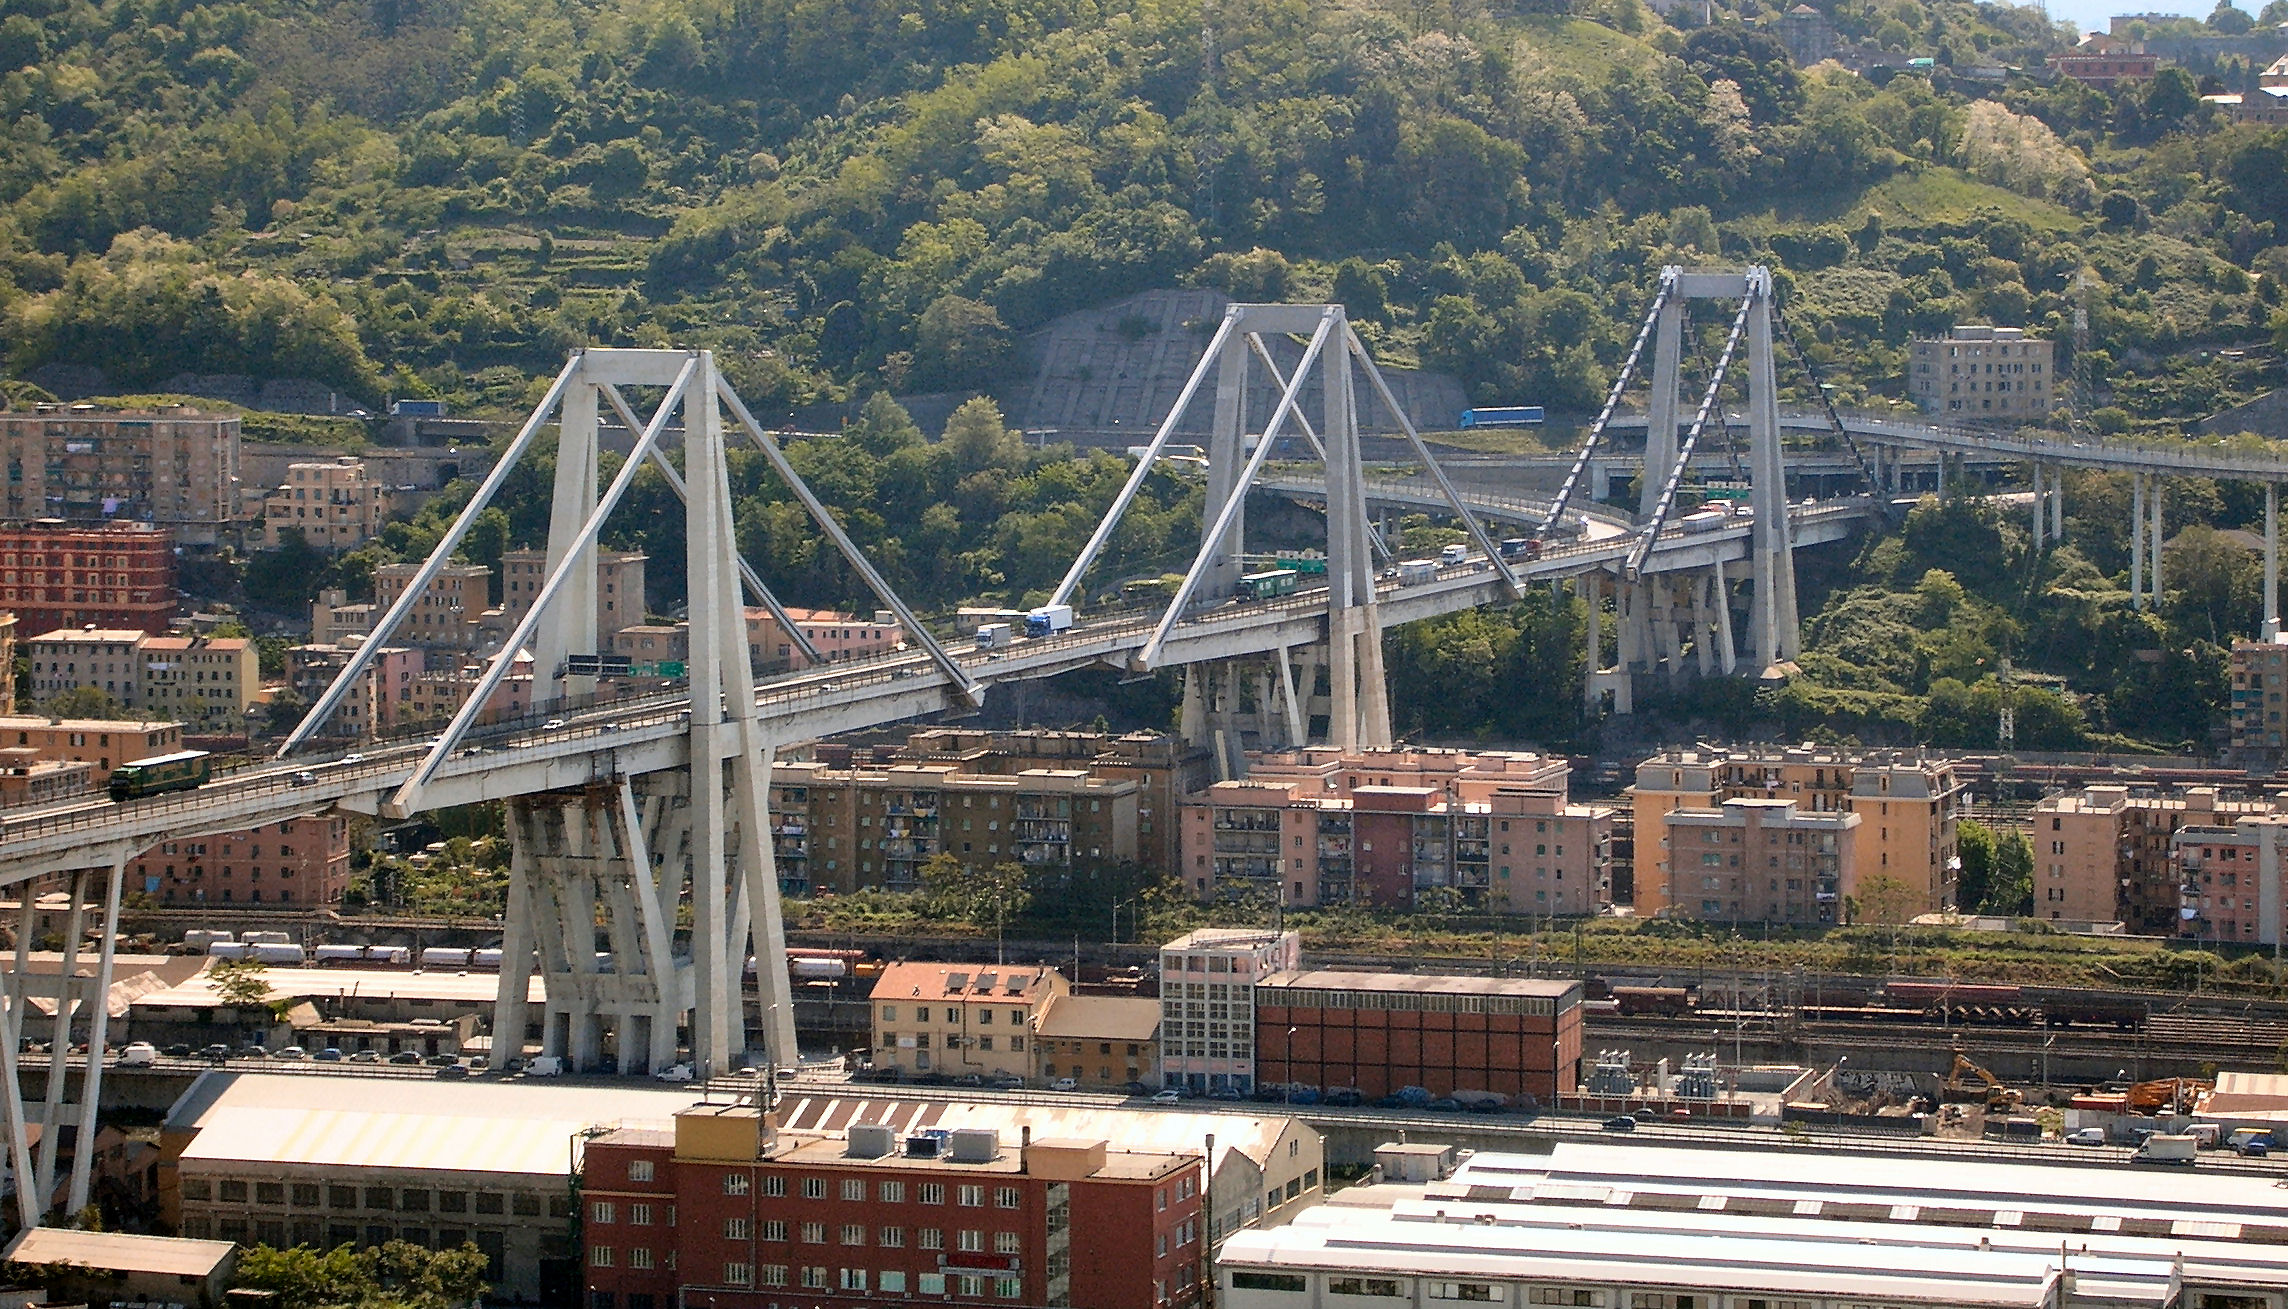 Drame de Gênes: forcée par l'État, la famille Benetton (Atlantia) sort de la gestion des autoroutes italiennes